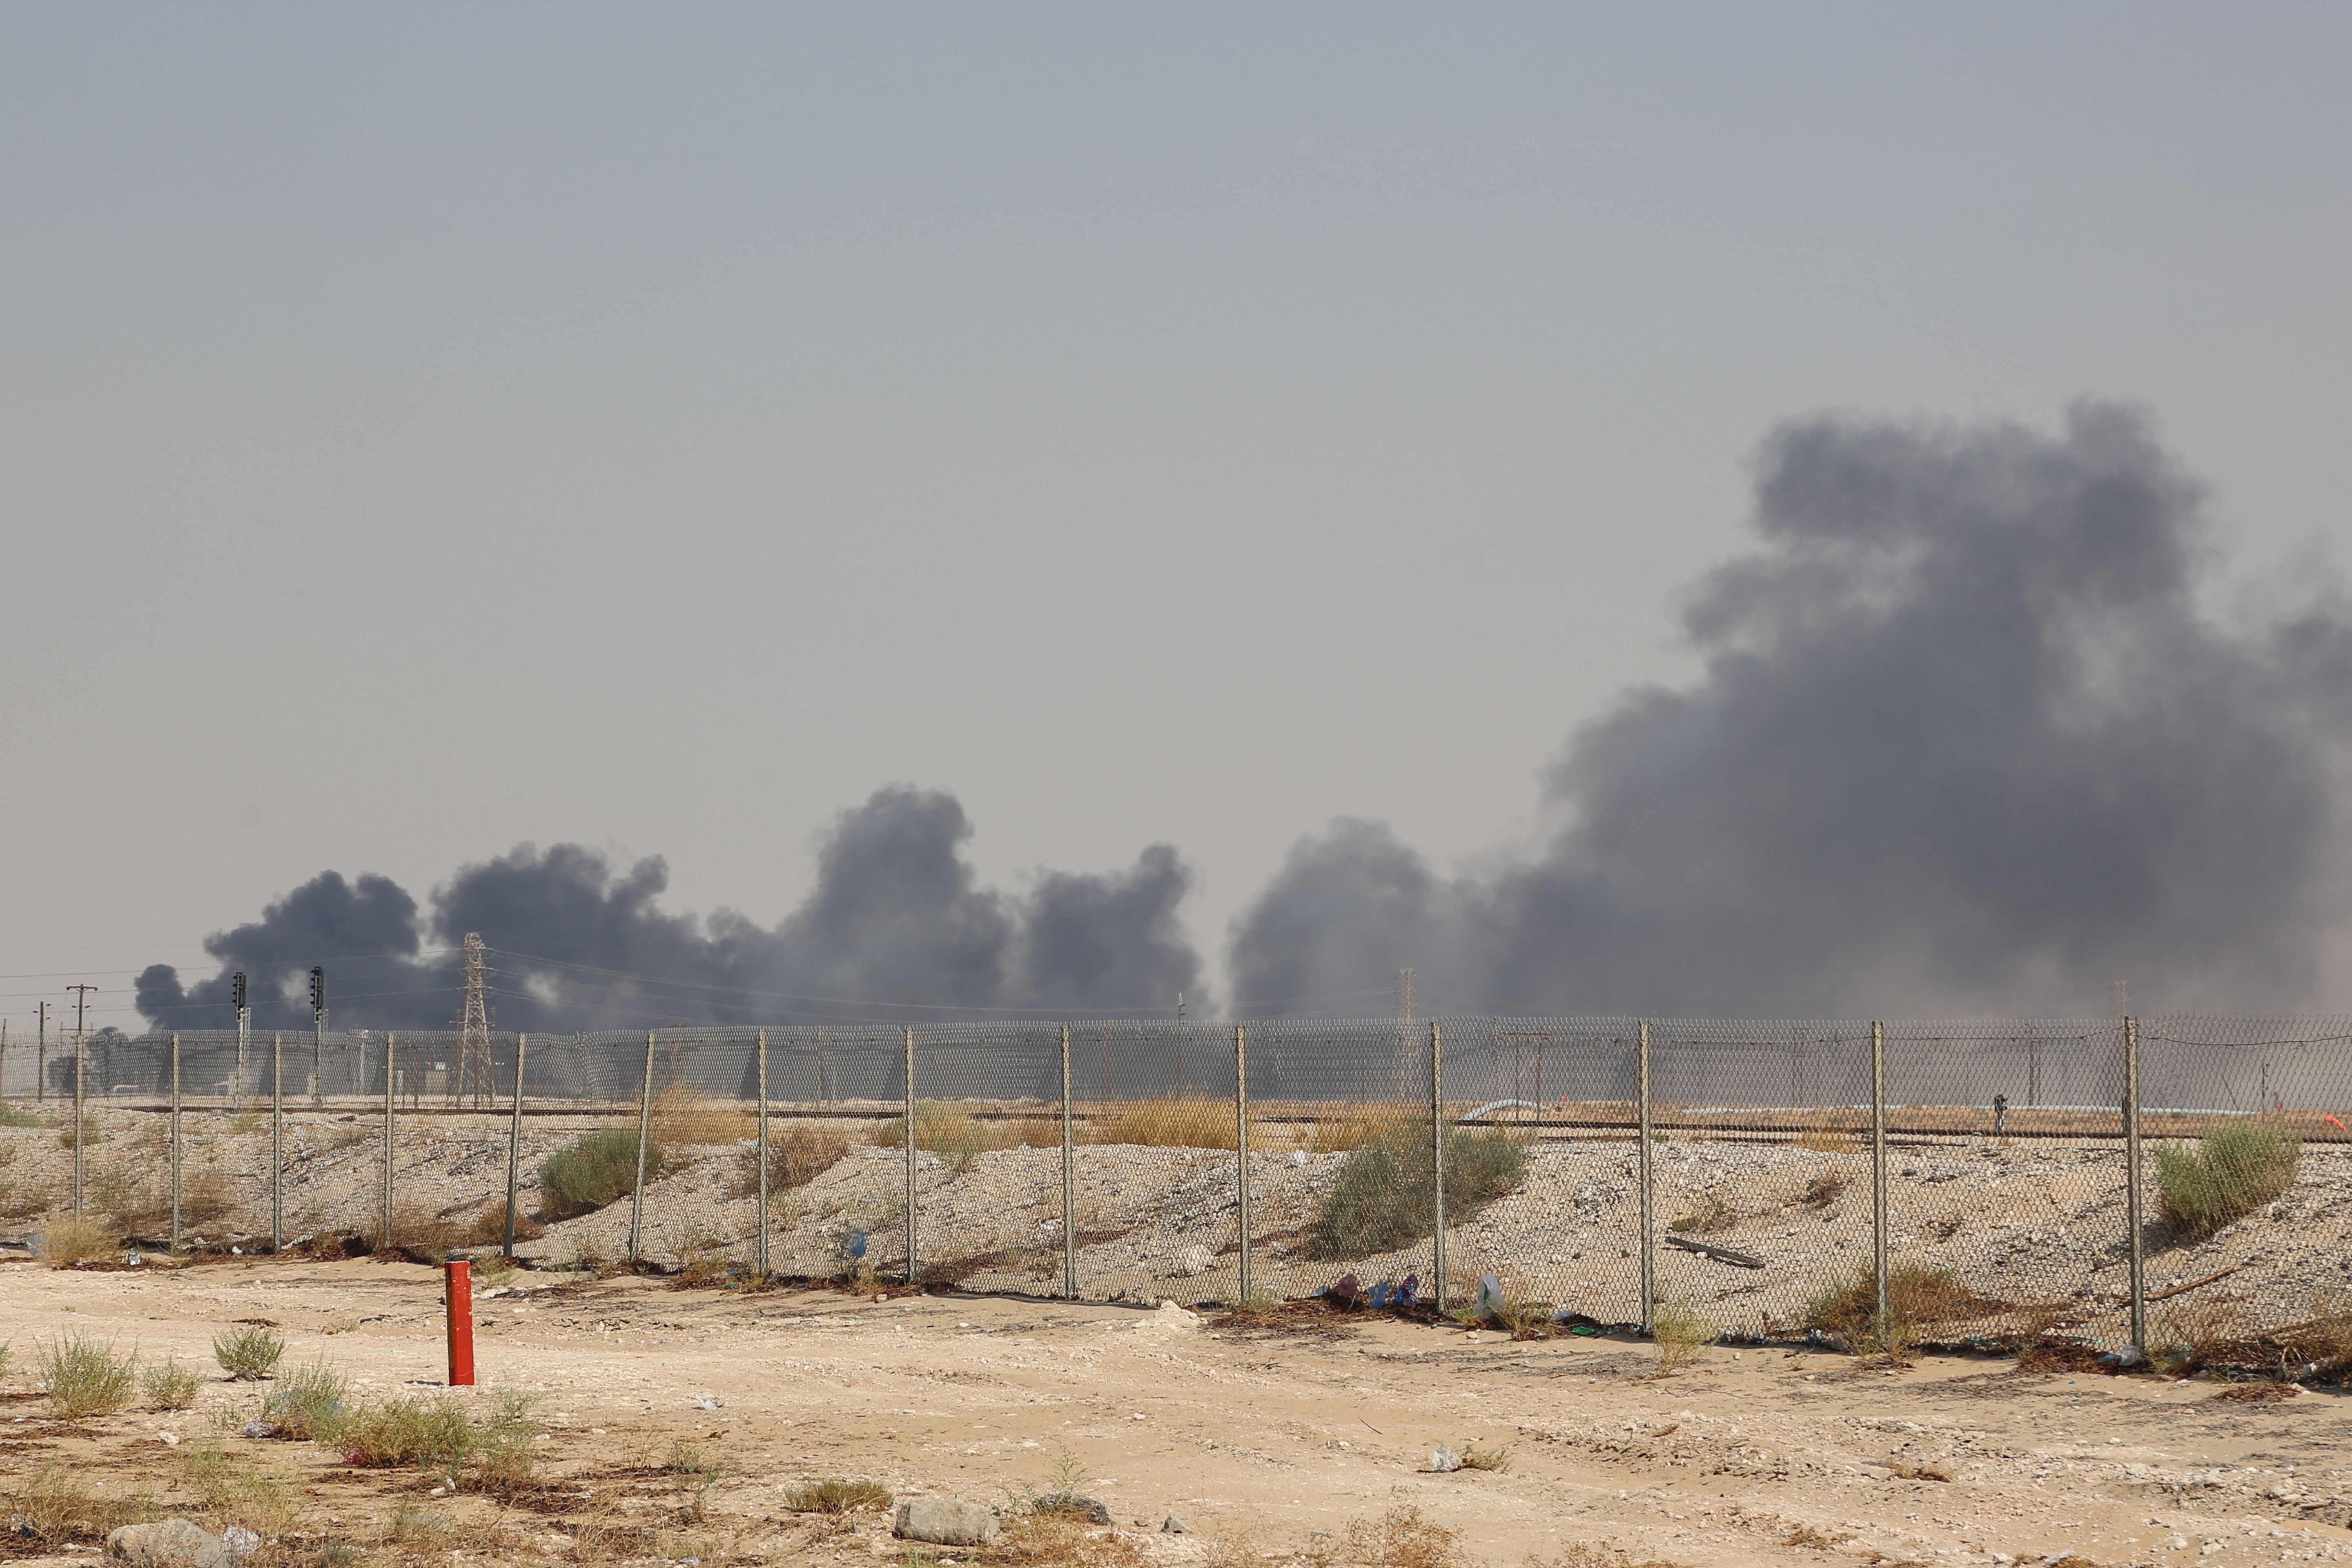 Нападение на нефтеперерабатывающие заводы. Атака дронов на НПЗ Саудовской Аравии. Нефтеперерабатывающий завод в Саудовской Аравии. Нефтехранилище Саудовская Аравия. Атака на нефтезаводы в Саудовской Аравии.